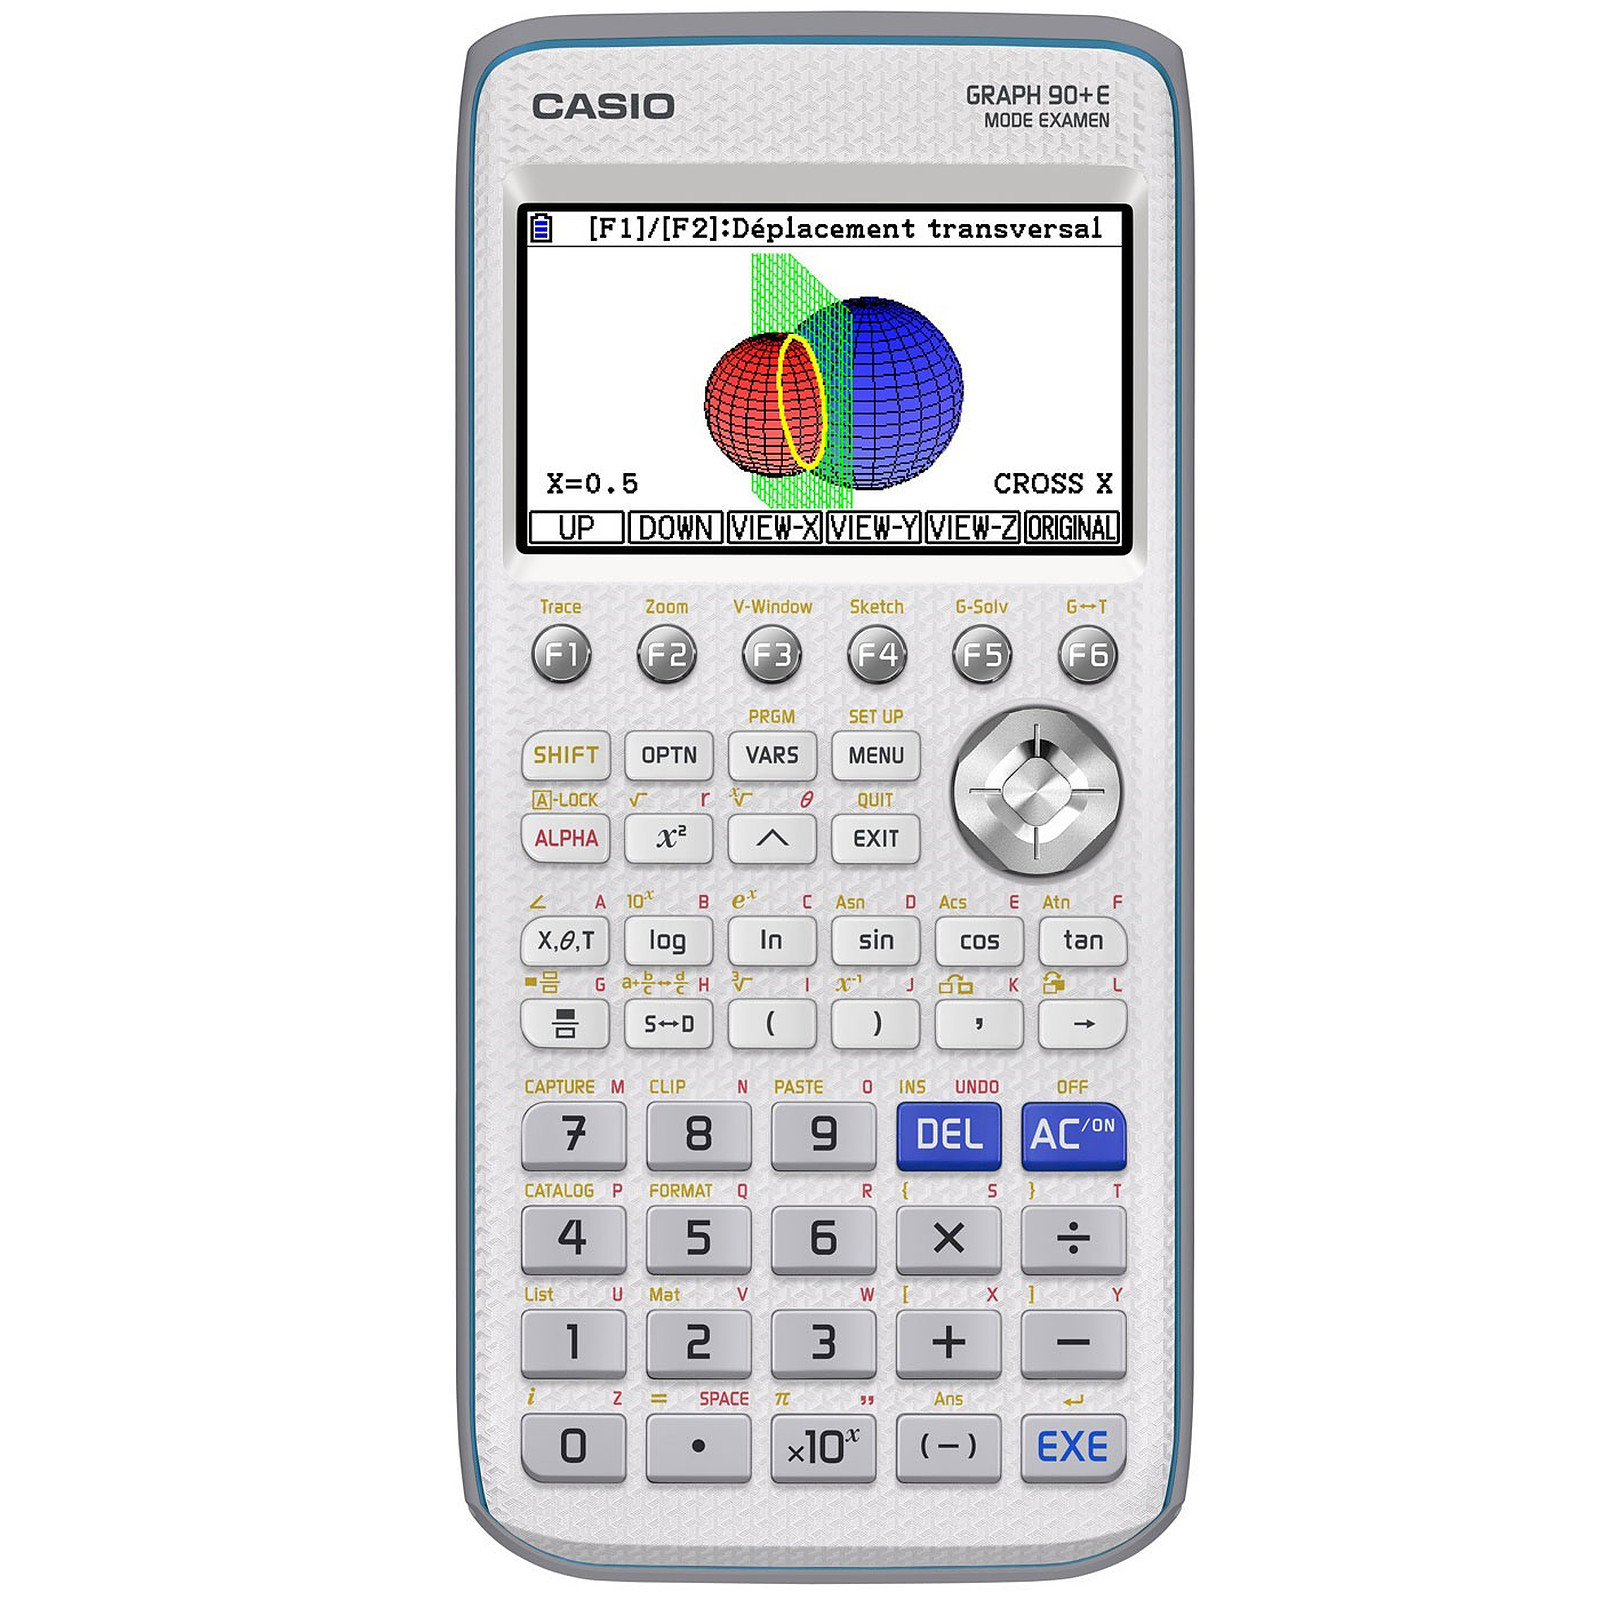 Casio Graph 90+E Mode Examen Langage PYTHON - Calculatrice Casio